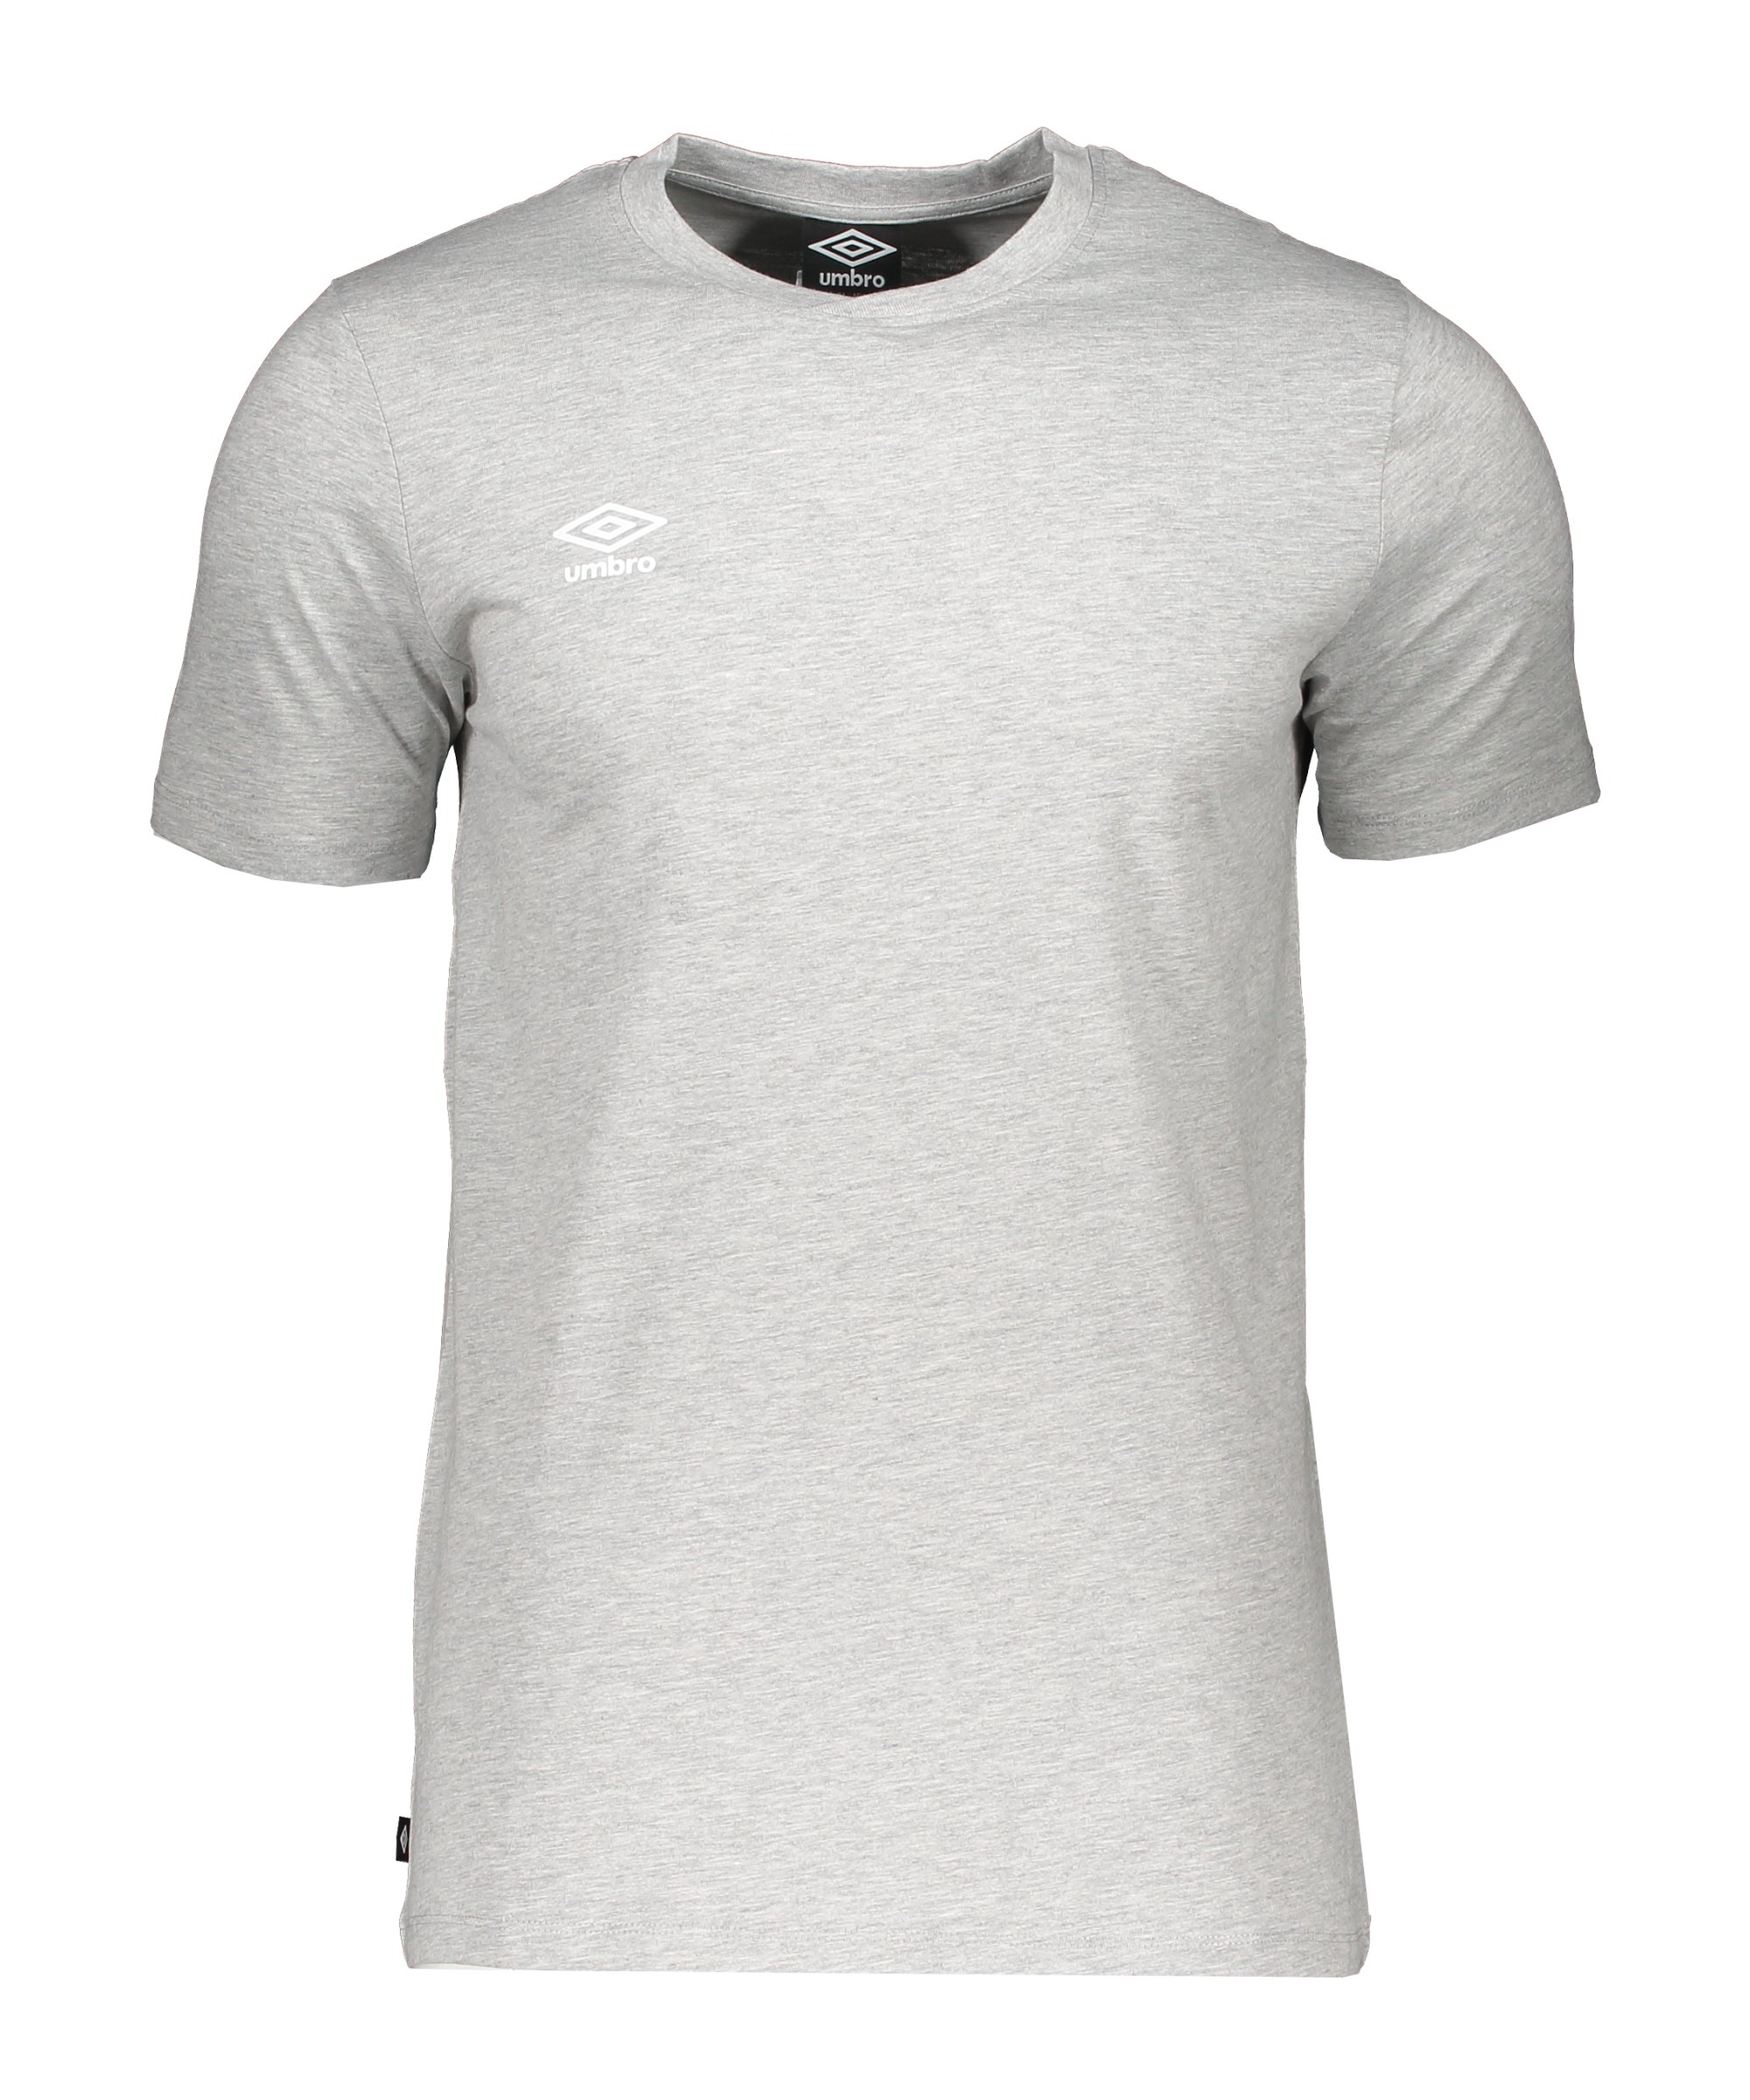 Umbro Club Leisure Crew T-Shirt Grau FZZ0 - grau